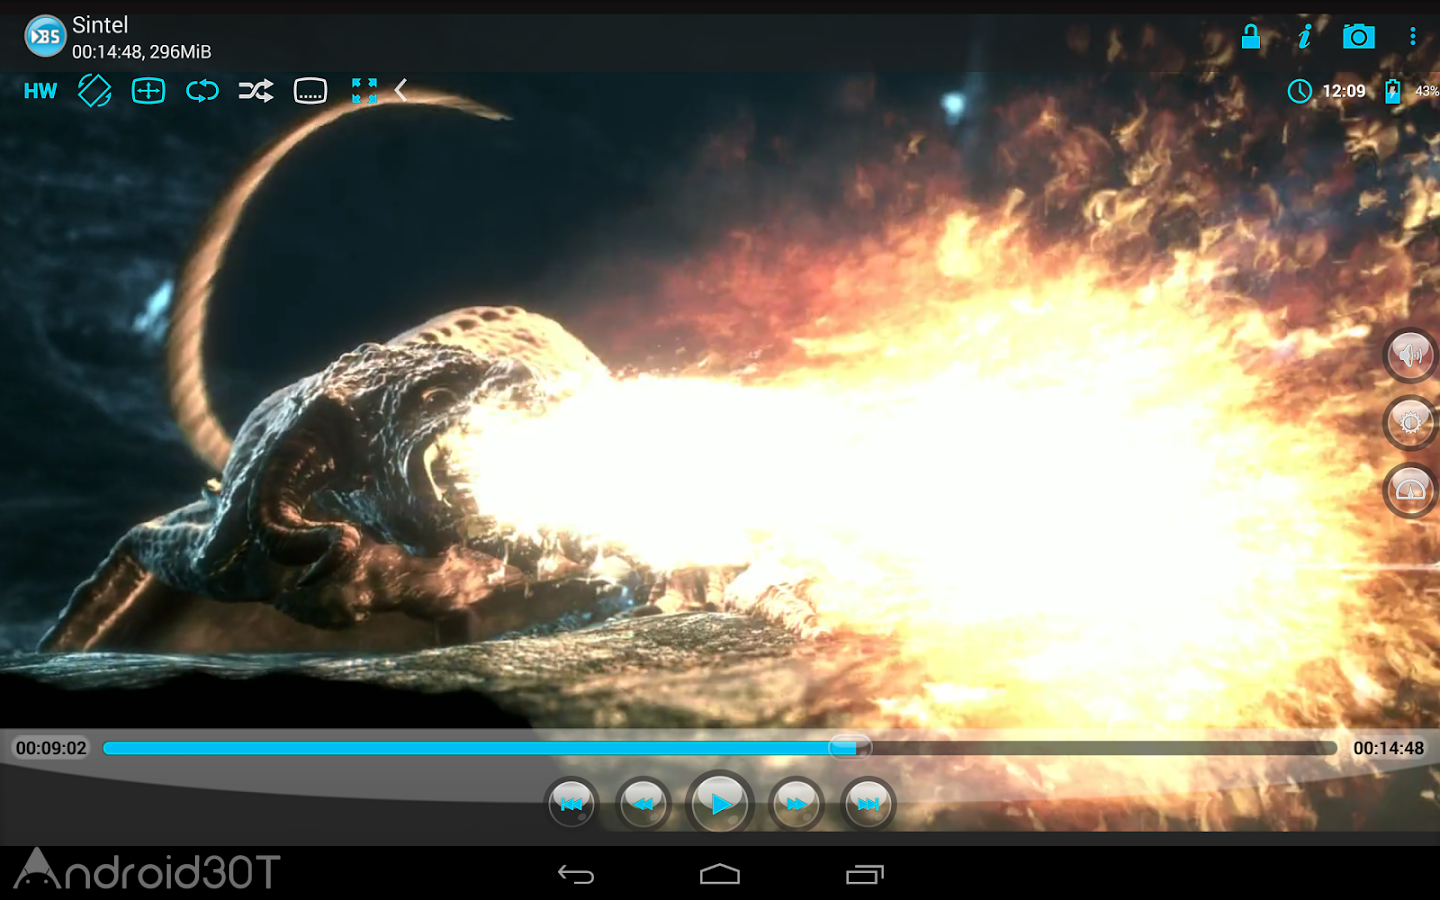 دانلود BSPlayer Full 3.16.240 – ویدئو پلیر قدرتمند اندروید